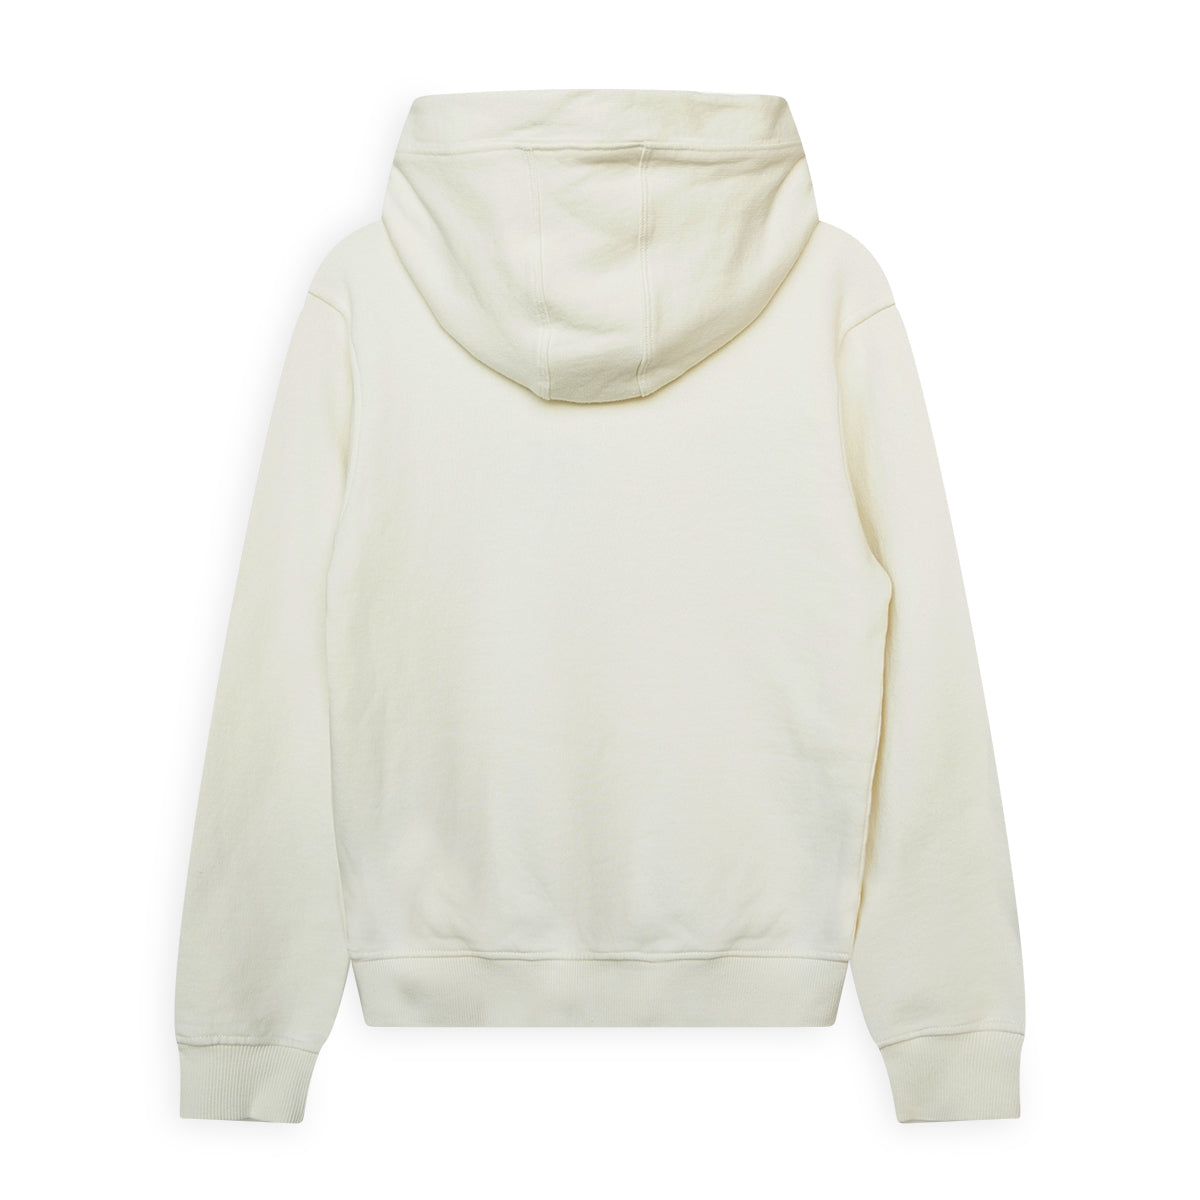 Jongens Hooded sweater van SevenOneSeven in de kleur Off White in maat 170-176.